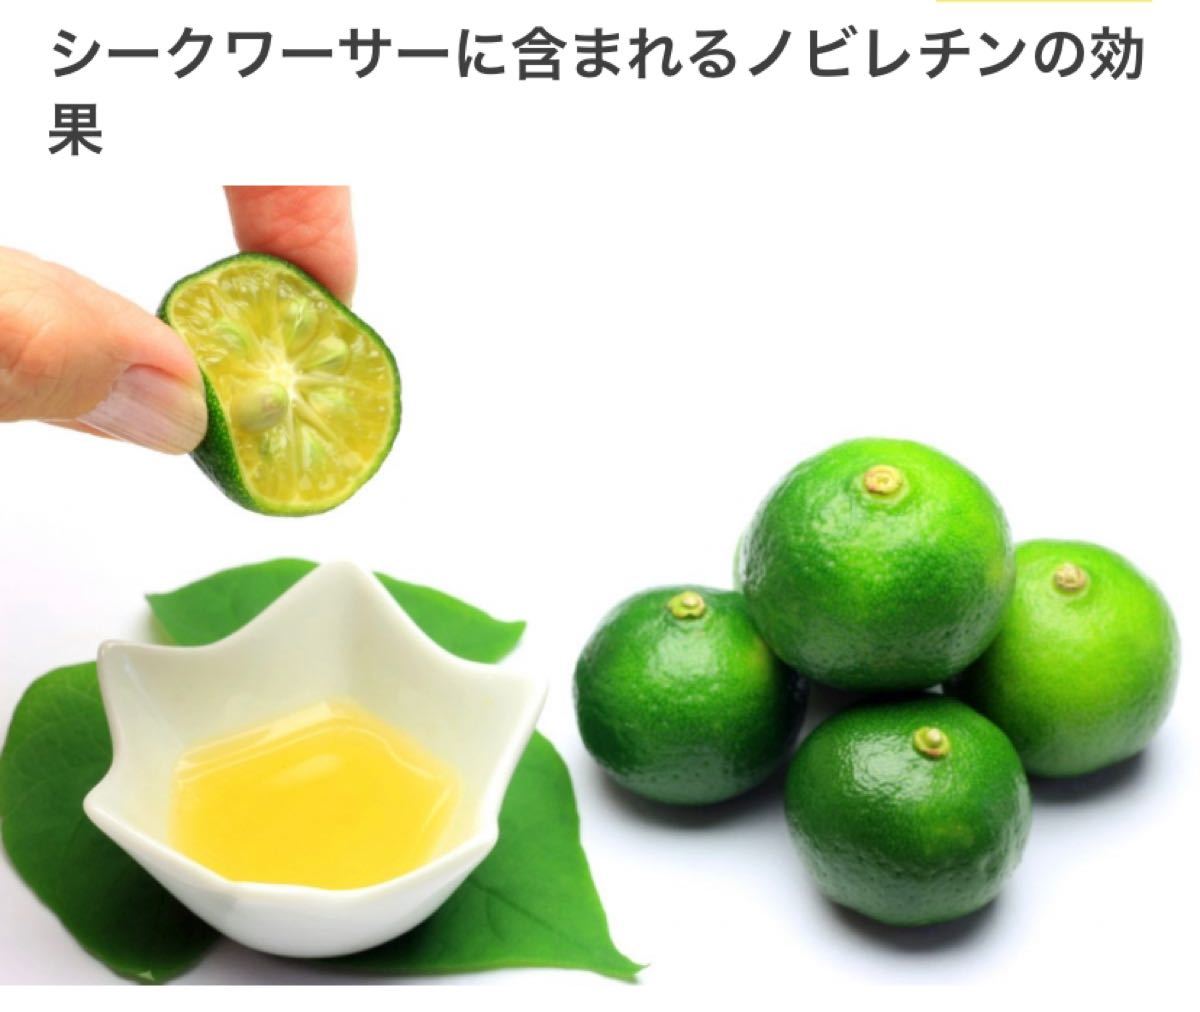 沖縄産シークワーサーを100%果汁(500ml)の3本セット